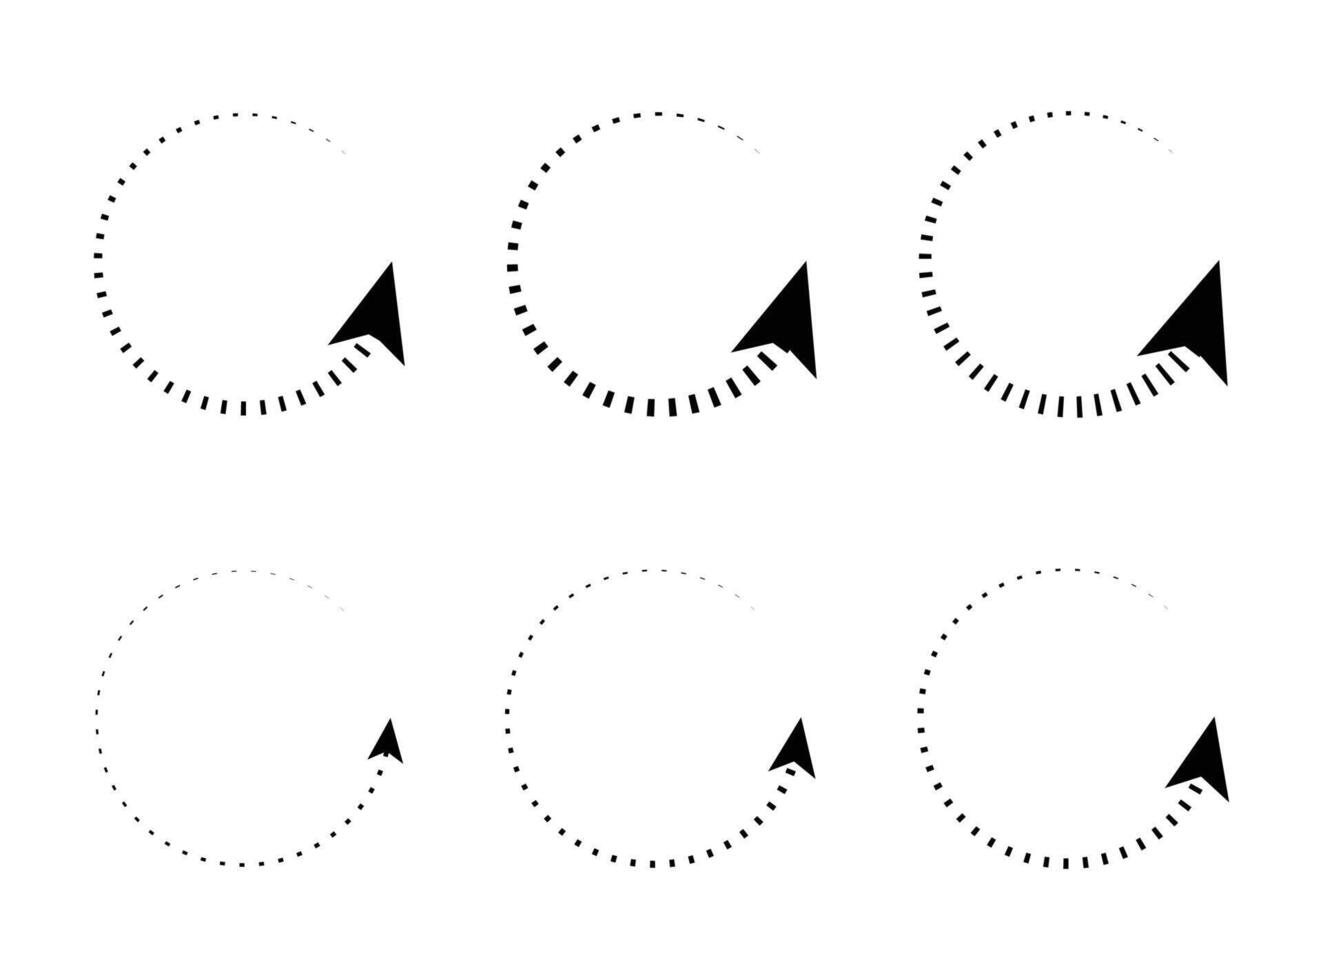 refresh ikon eller symbol, omstart ikon cirkel pil symboliserar vektor. vektor